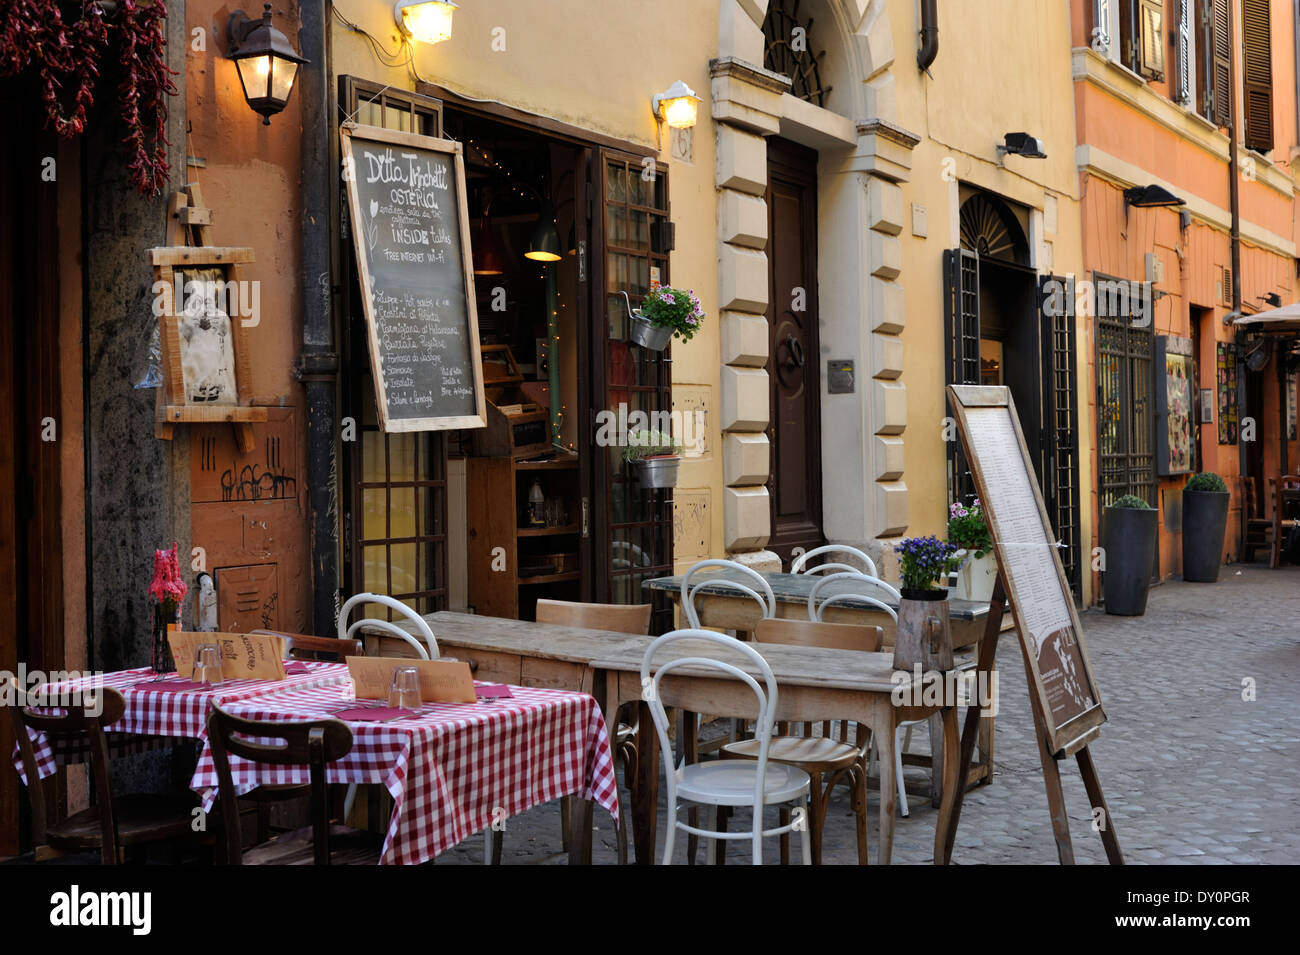 Italie, Rome, Trastevere, tables de restaurant Banque D'Images